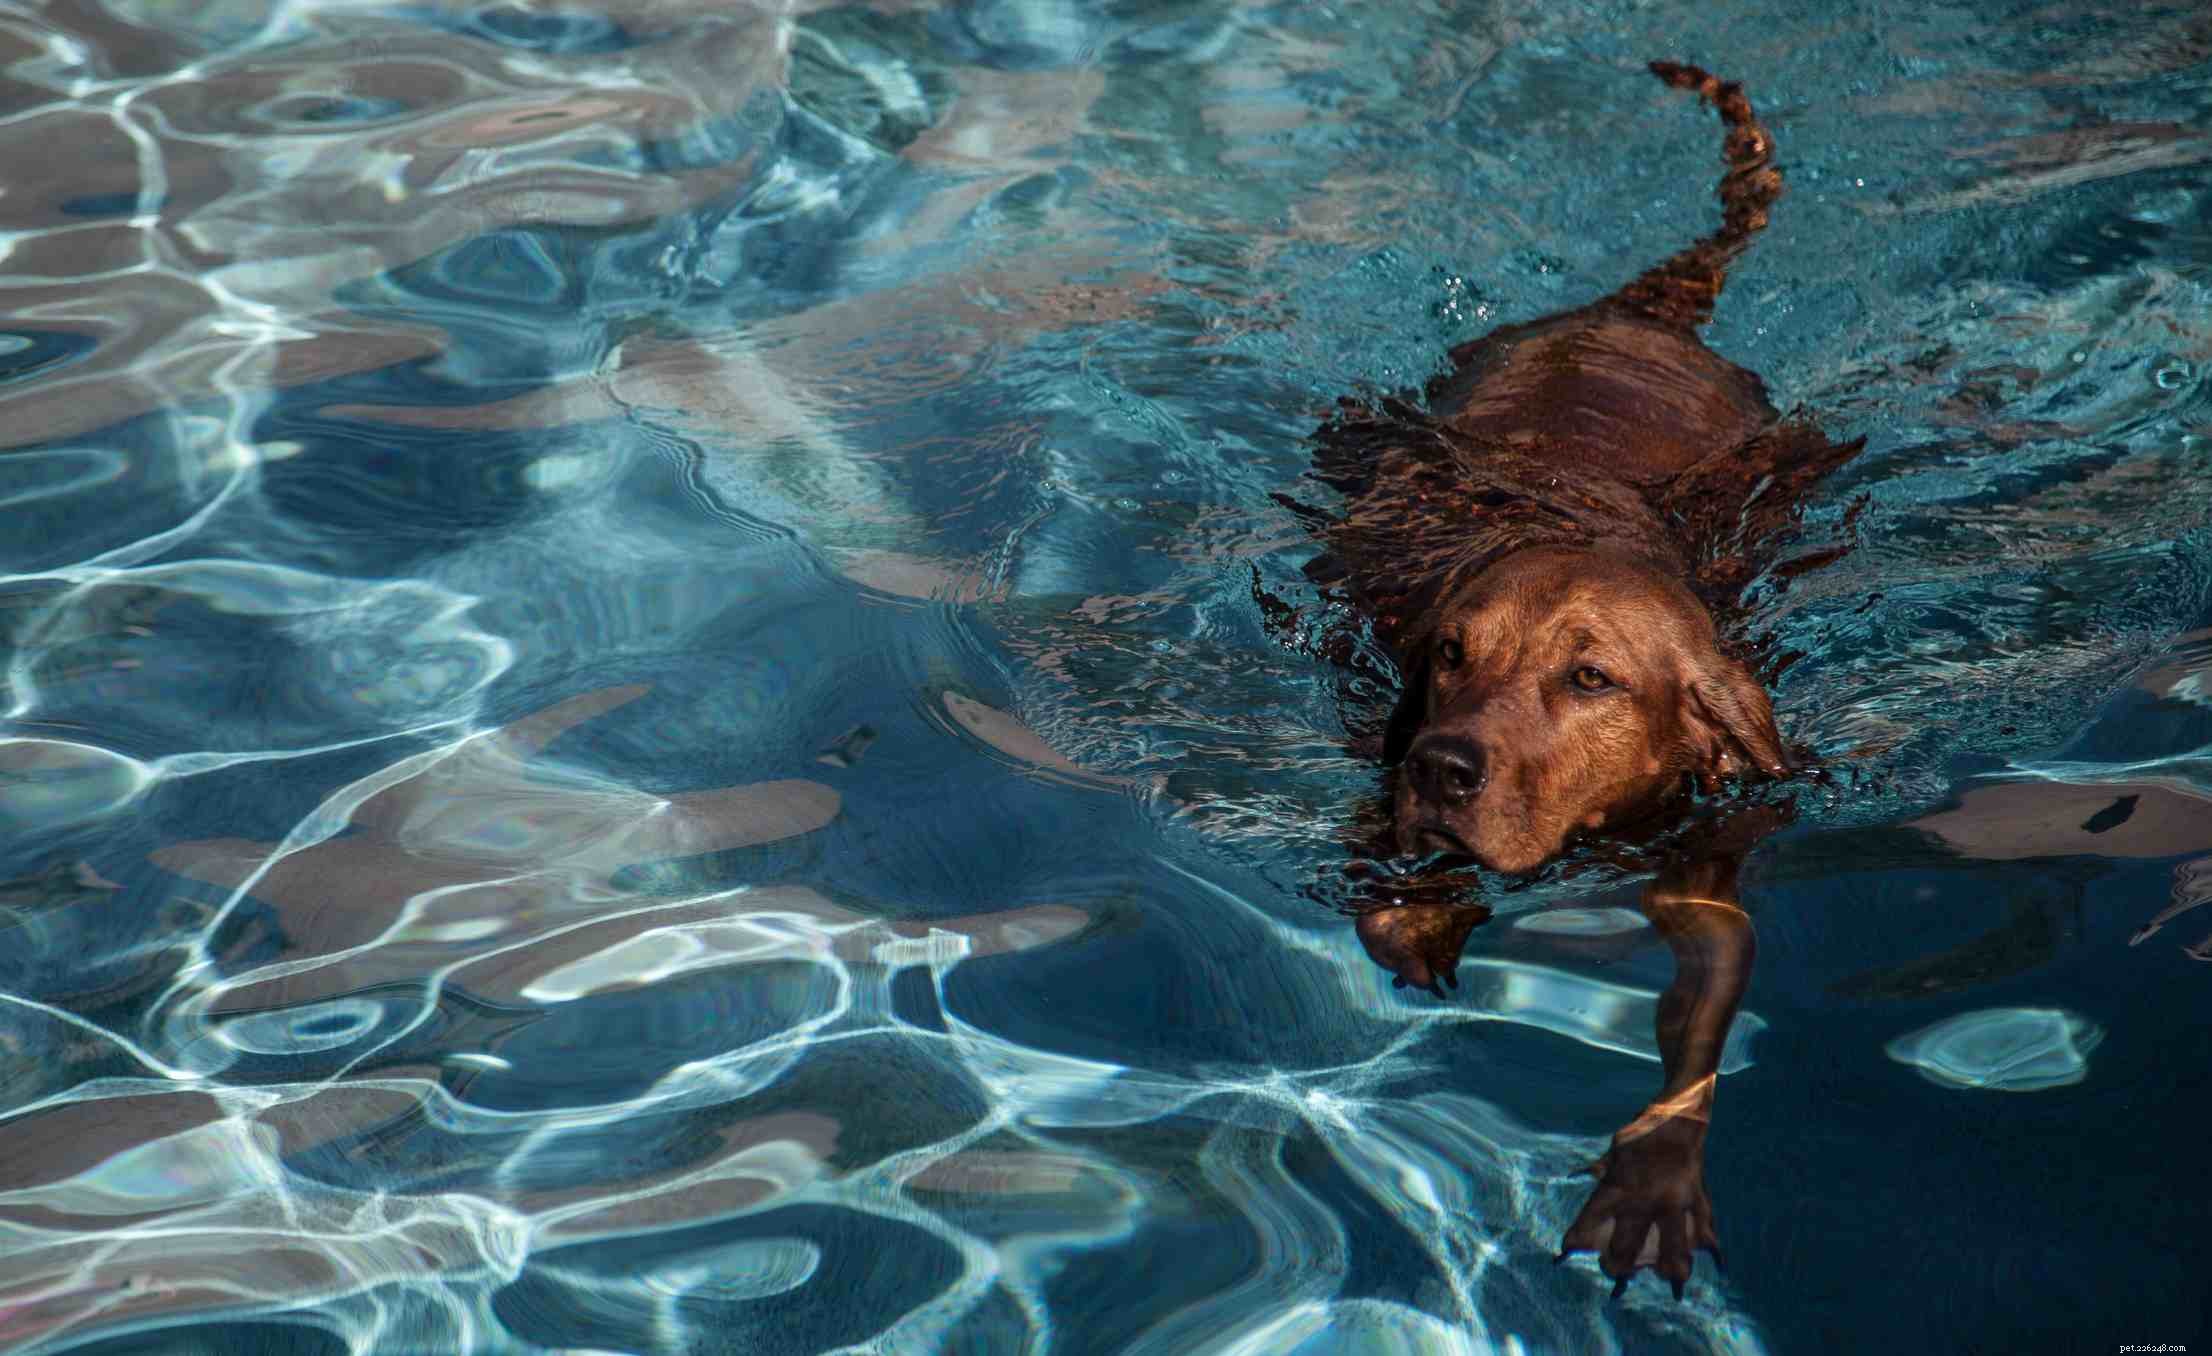 Redbone Coonhound :caractéristiques et soins de la race de chien